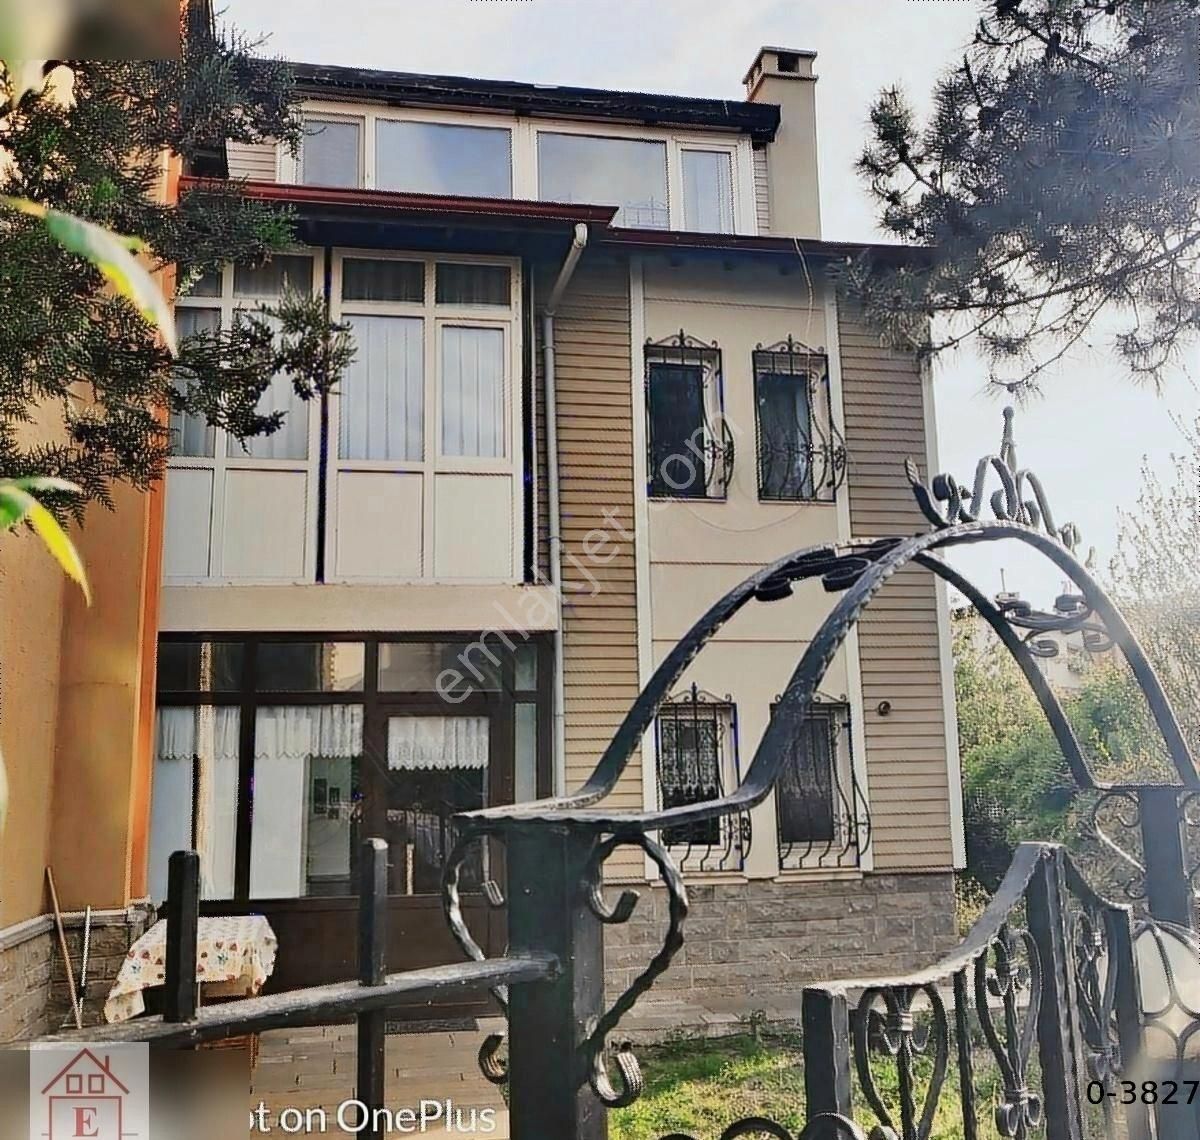 Çankaya Prof. Dr. Ahmet Taner Kışlalı Satılık Villa Çayyolu Başkent Güvengir de Satılık Blok Köşesi Villa, Bakımlı